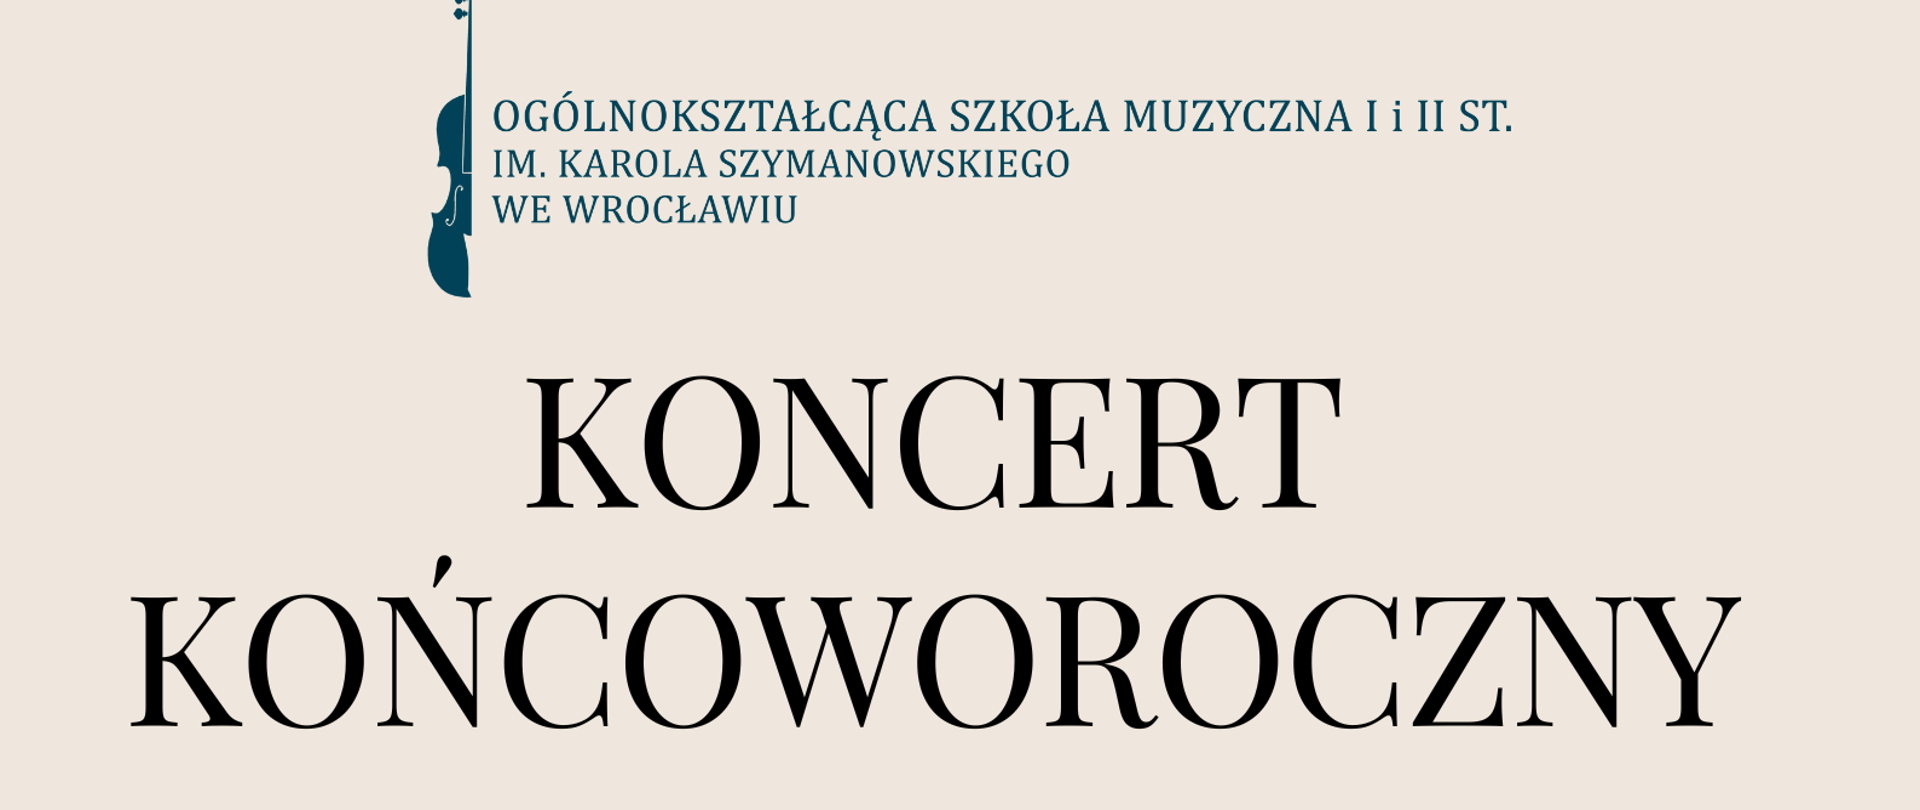 kolorowy plakat zawierający element graficzny klawiaturę fortepianu oraz logo szkoły i tytuł koncertu " Koncert końcoworoczny"